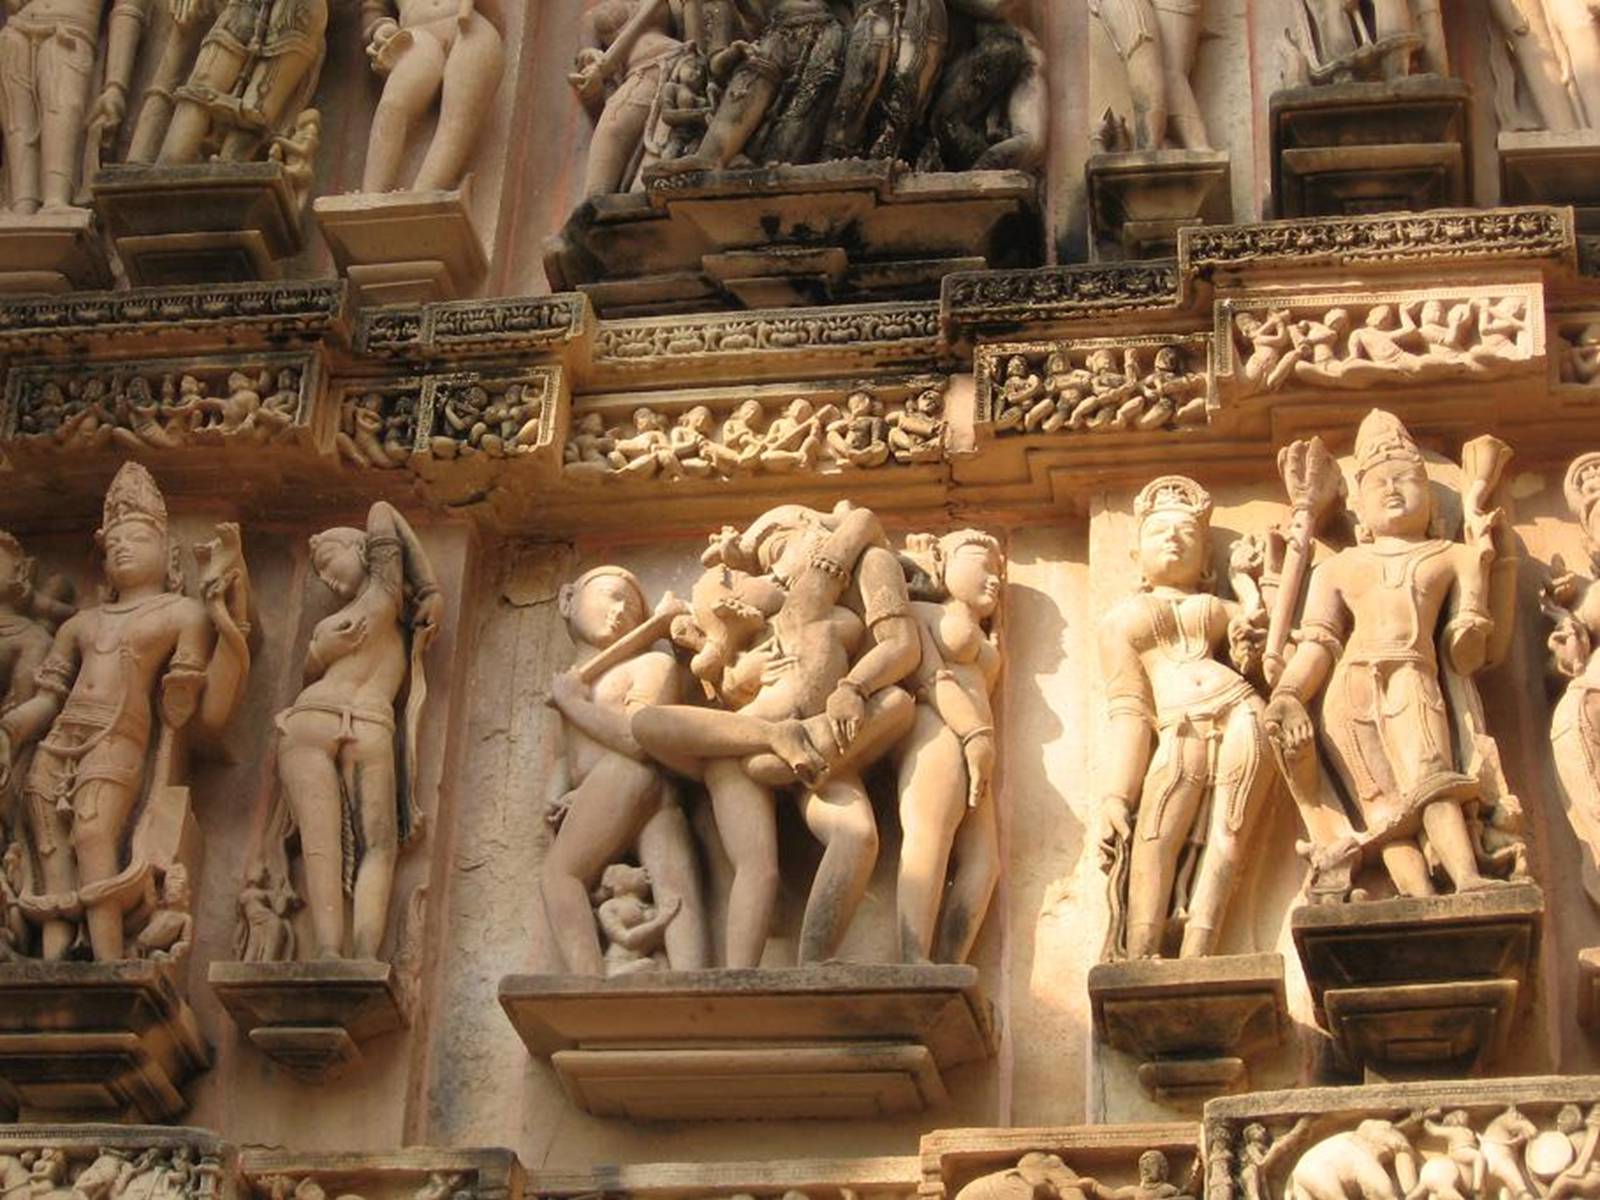 Индийская эротическая скульптура